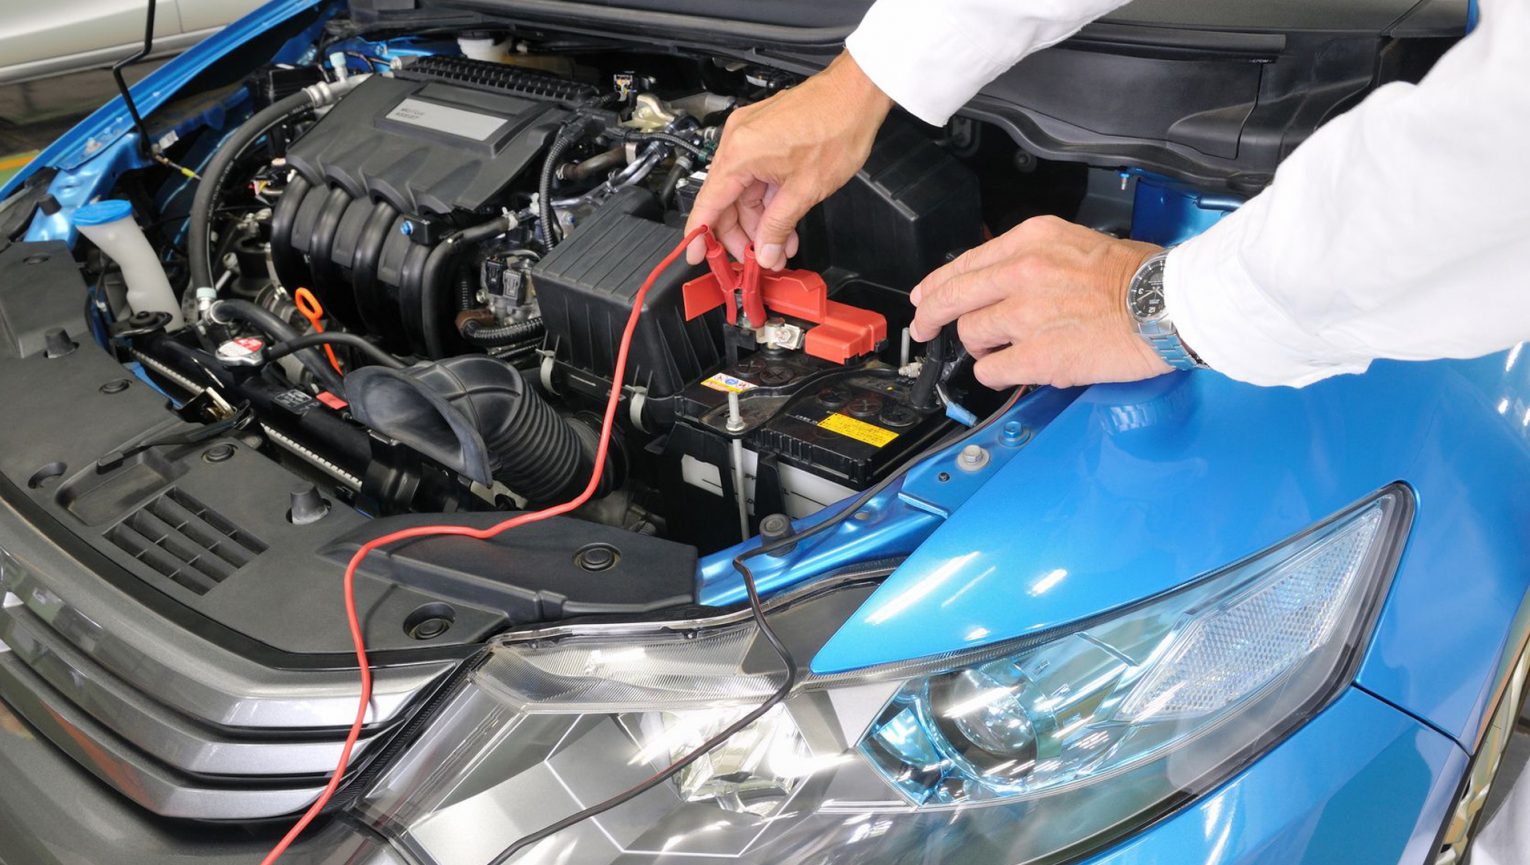 Rozładowanie akumulatora najczęstszą przyczyną awarii samochodów